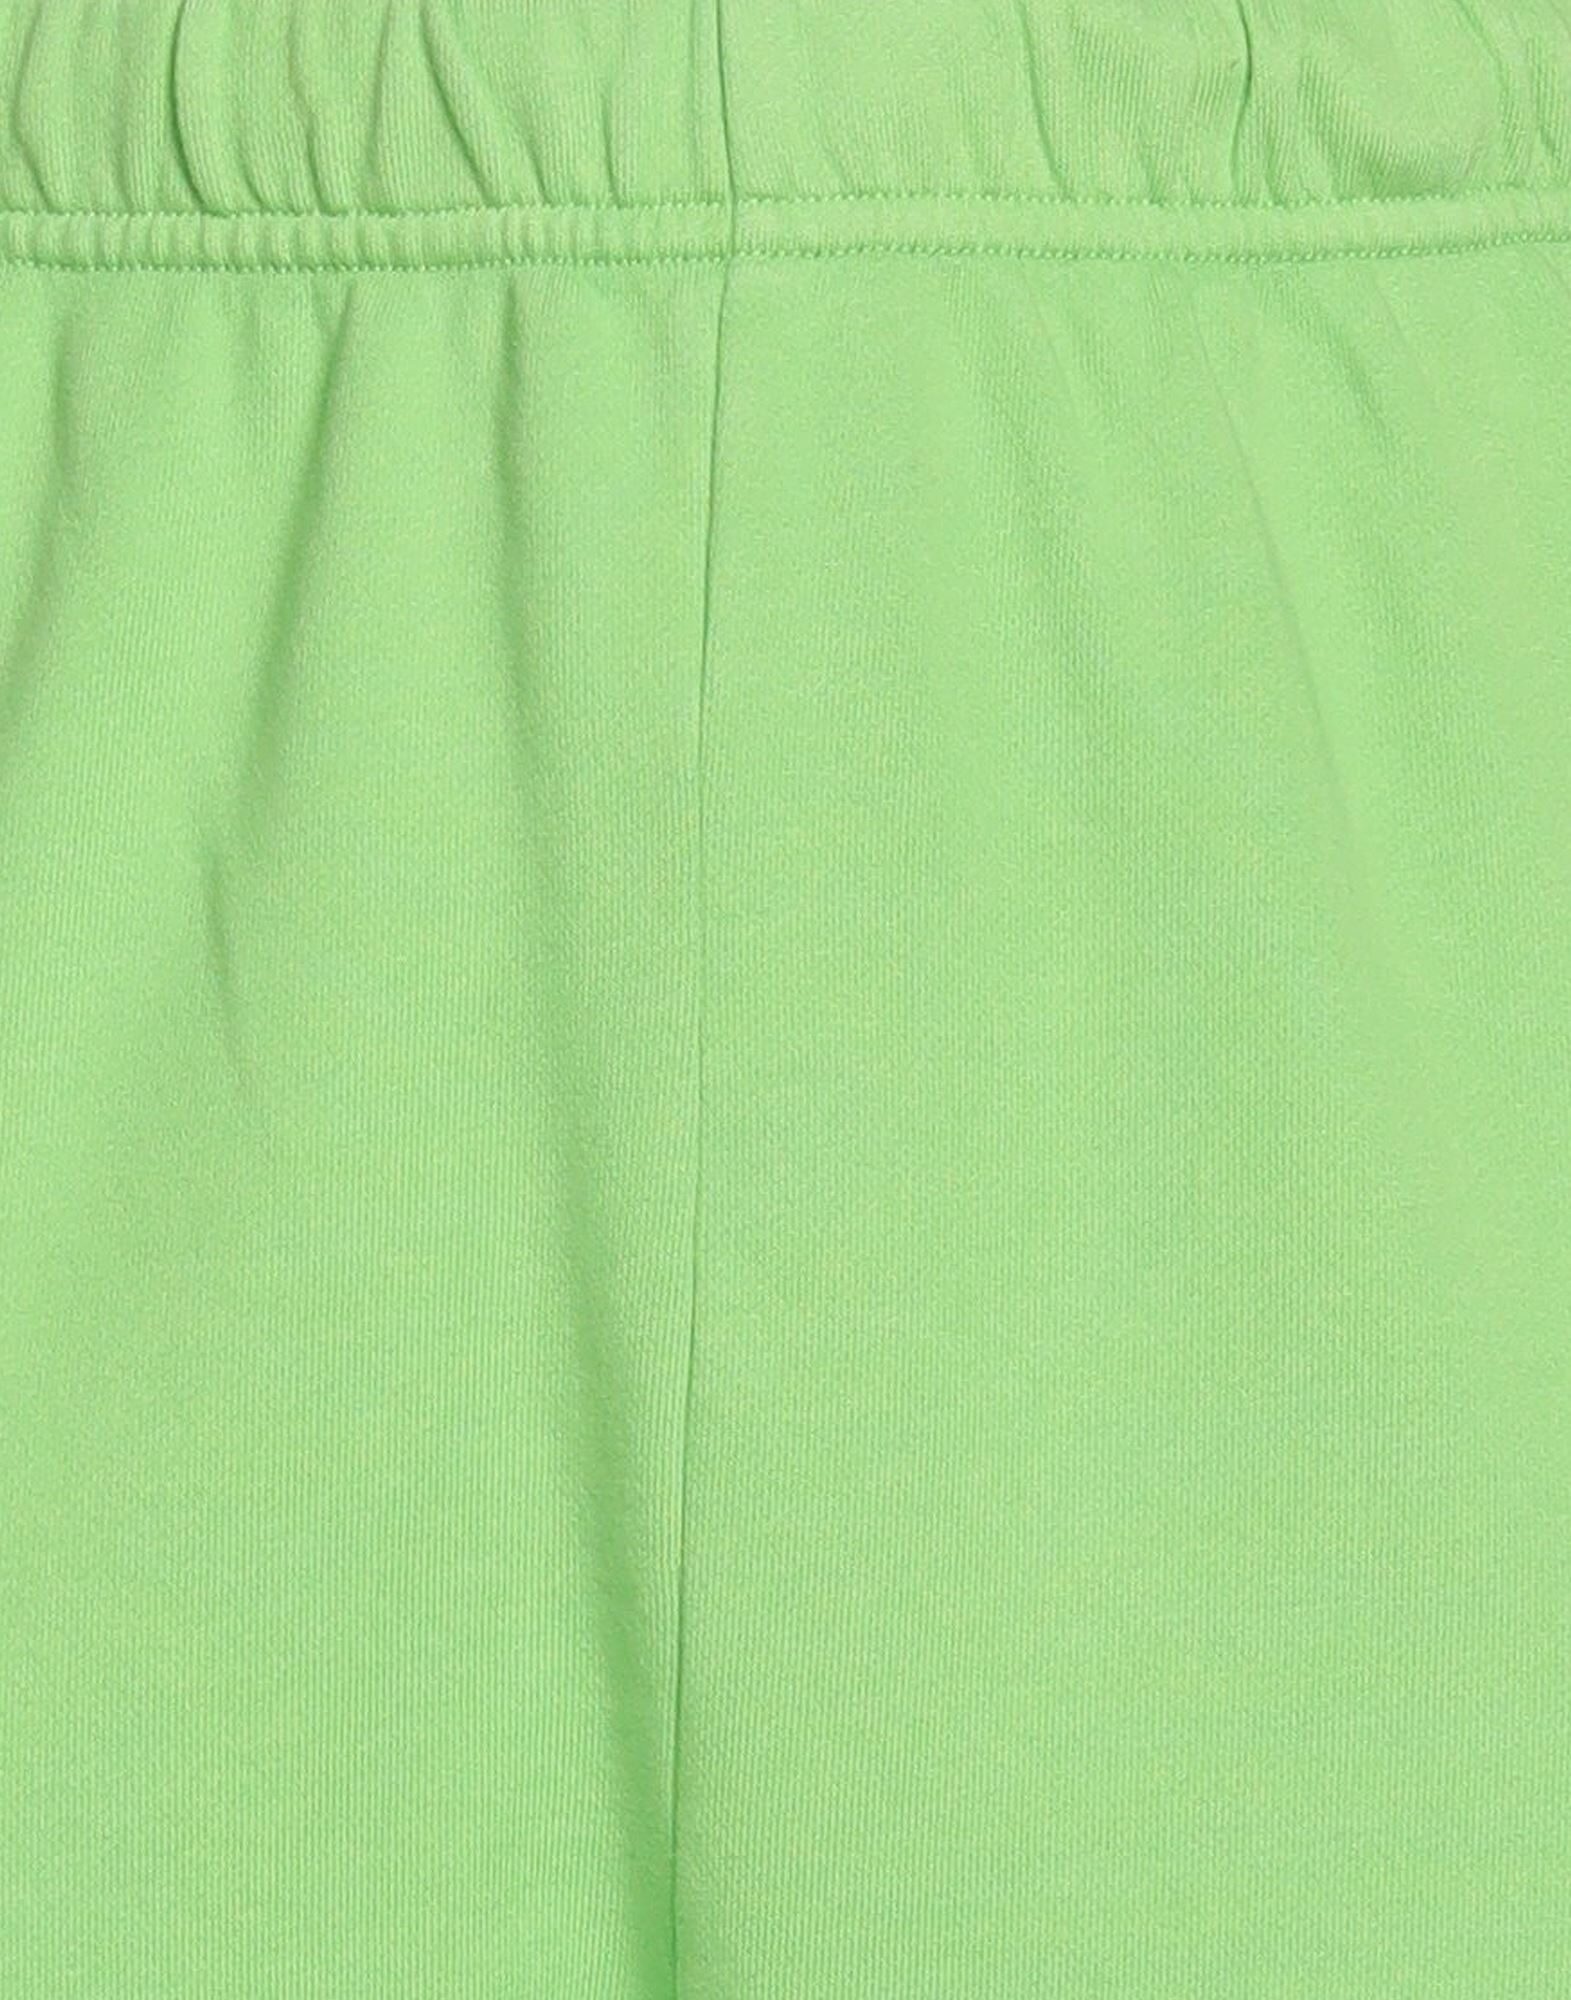 Green Women's Casual Pants - 4